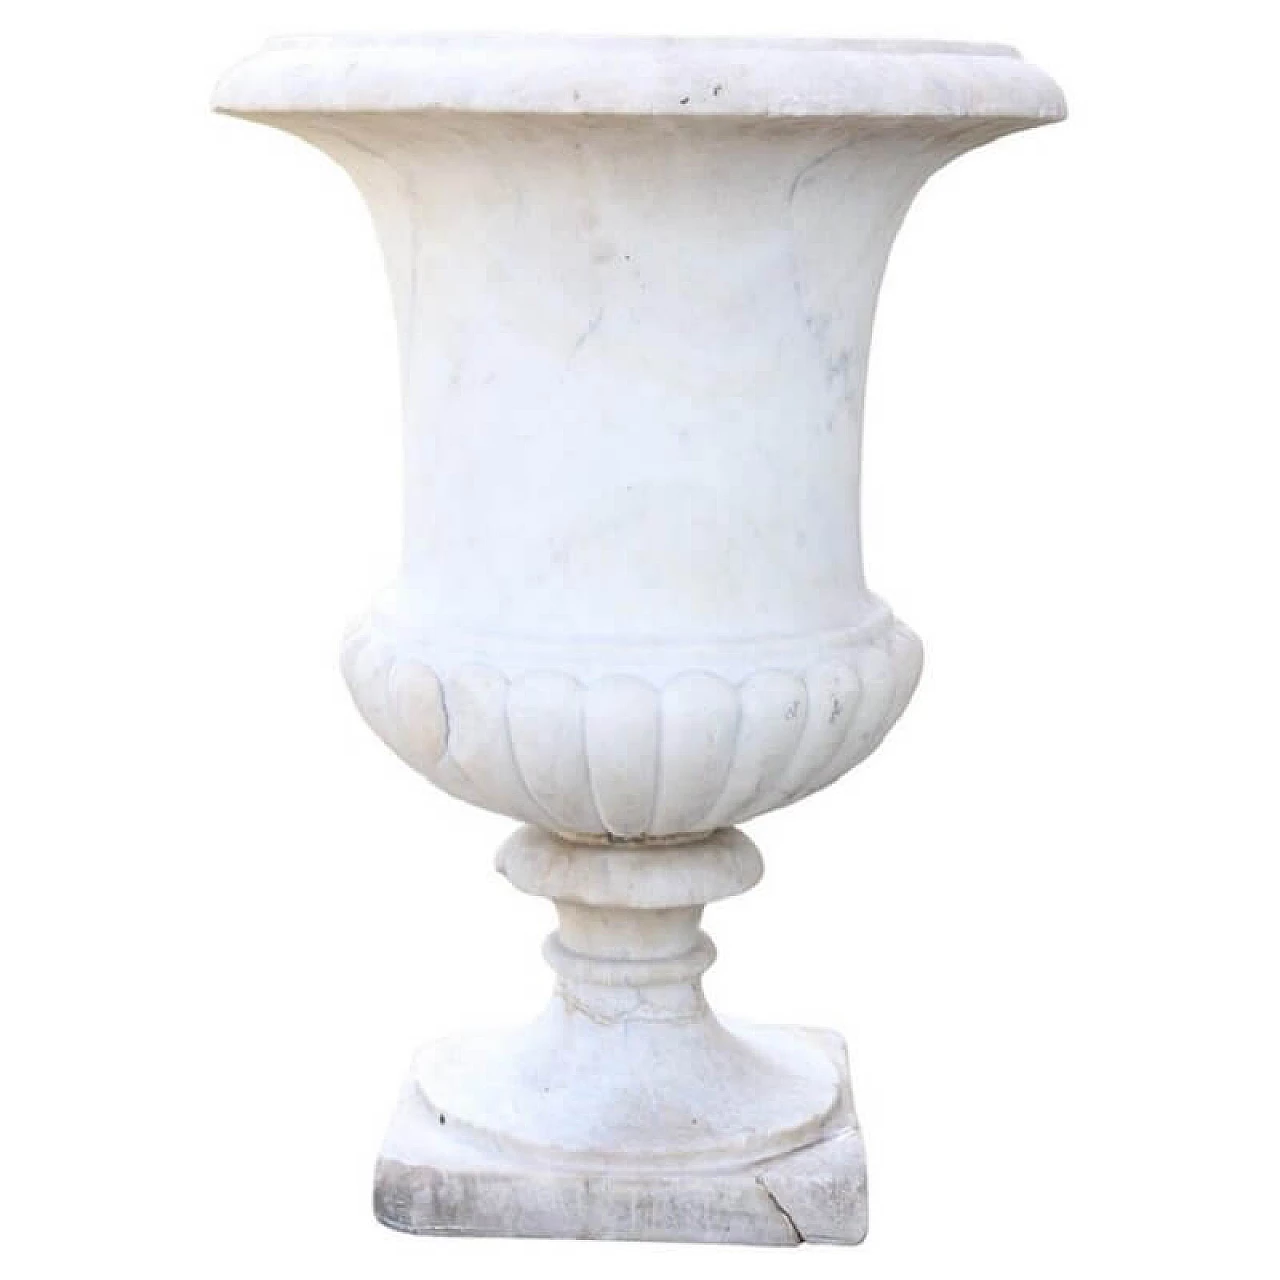 Medici vase in white Carrara marble, 19th century 1